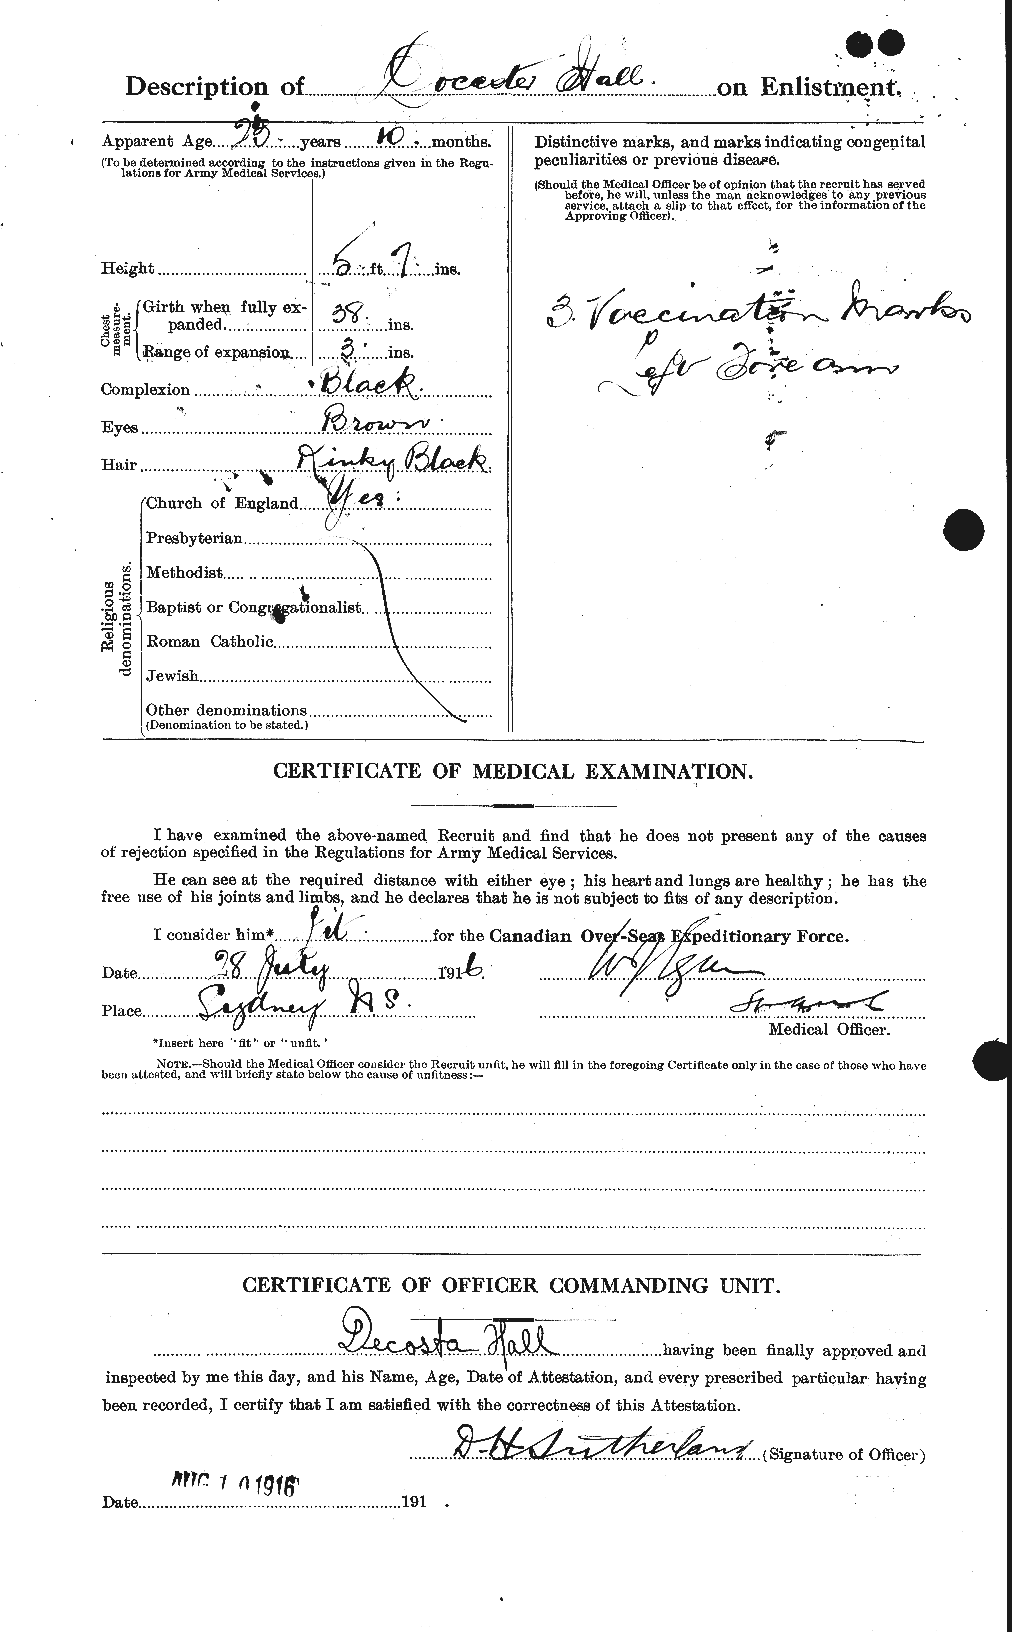 Dossiers du Personnel de la Première Guerre mondiale - CEC 372681b